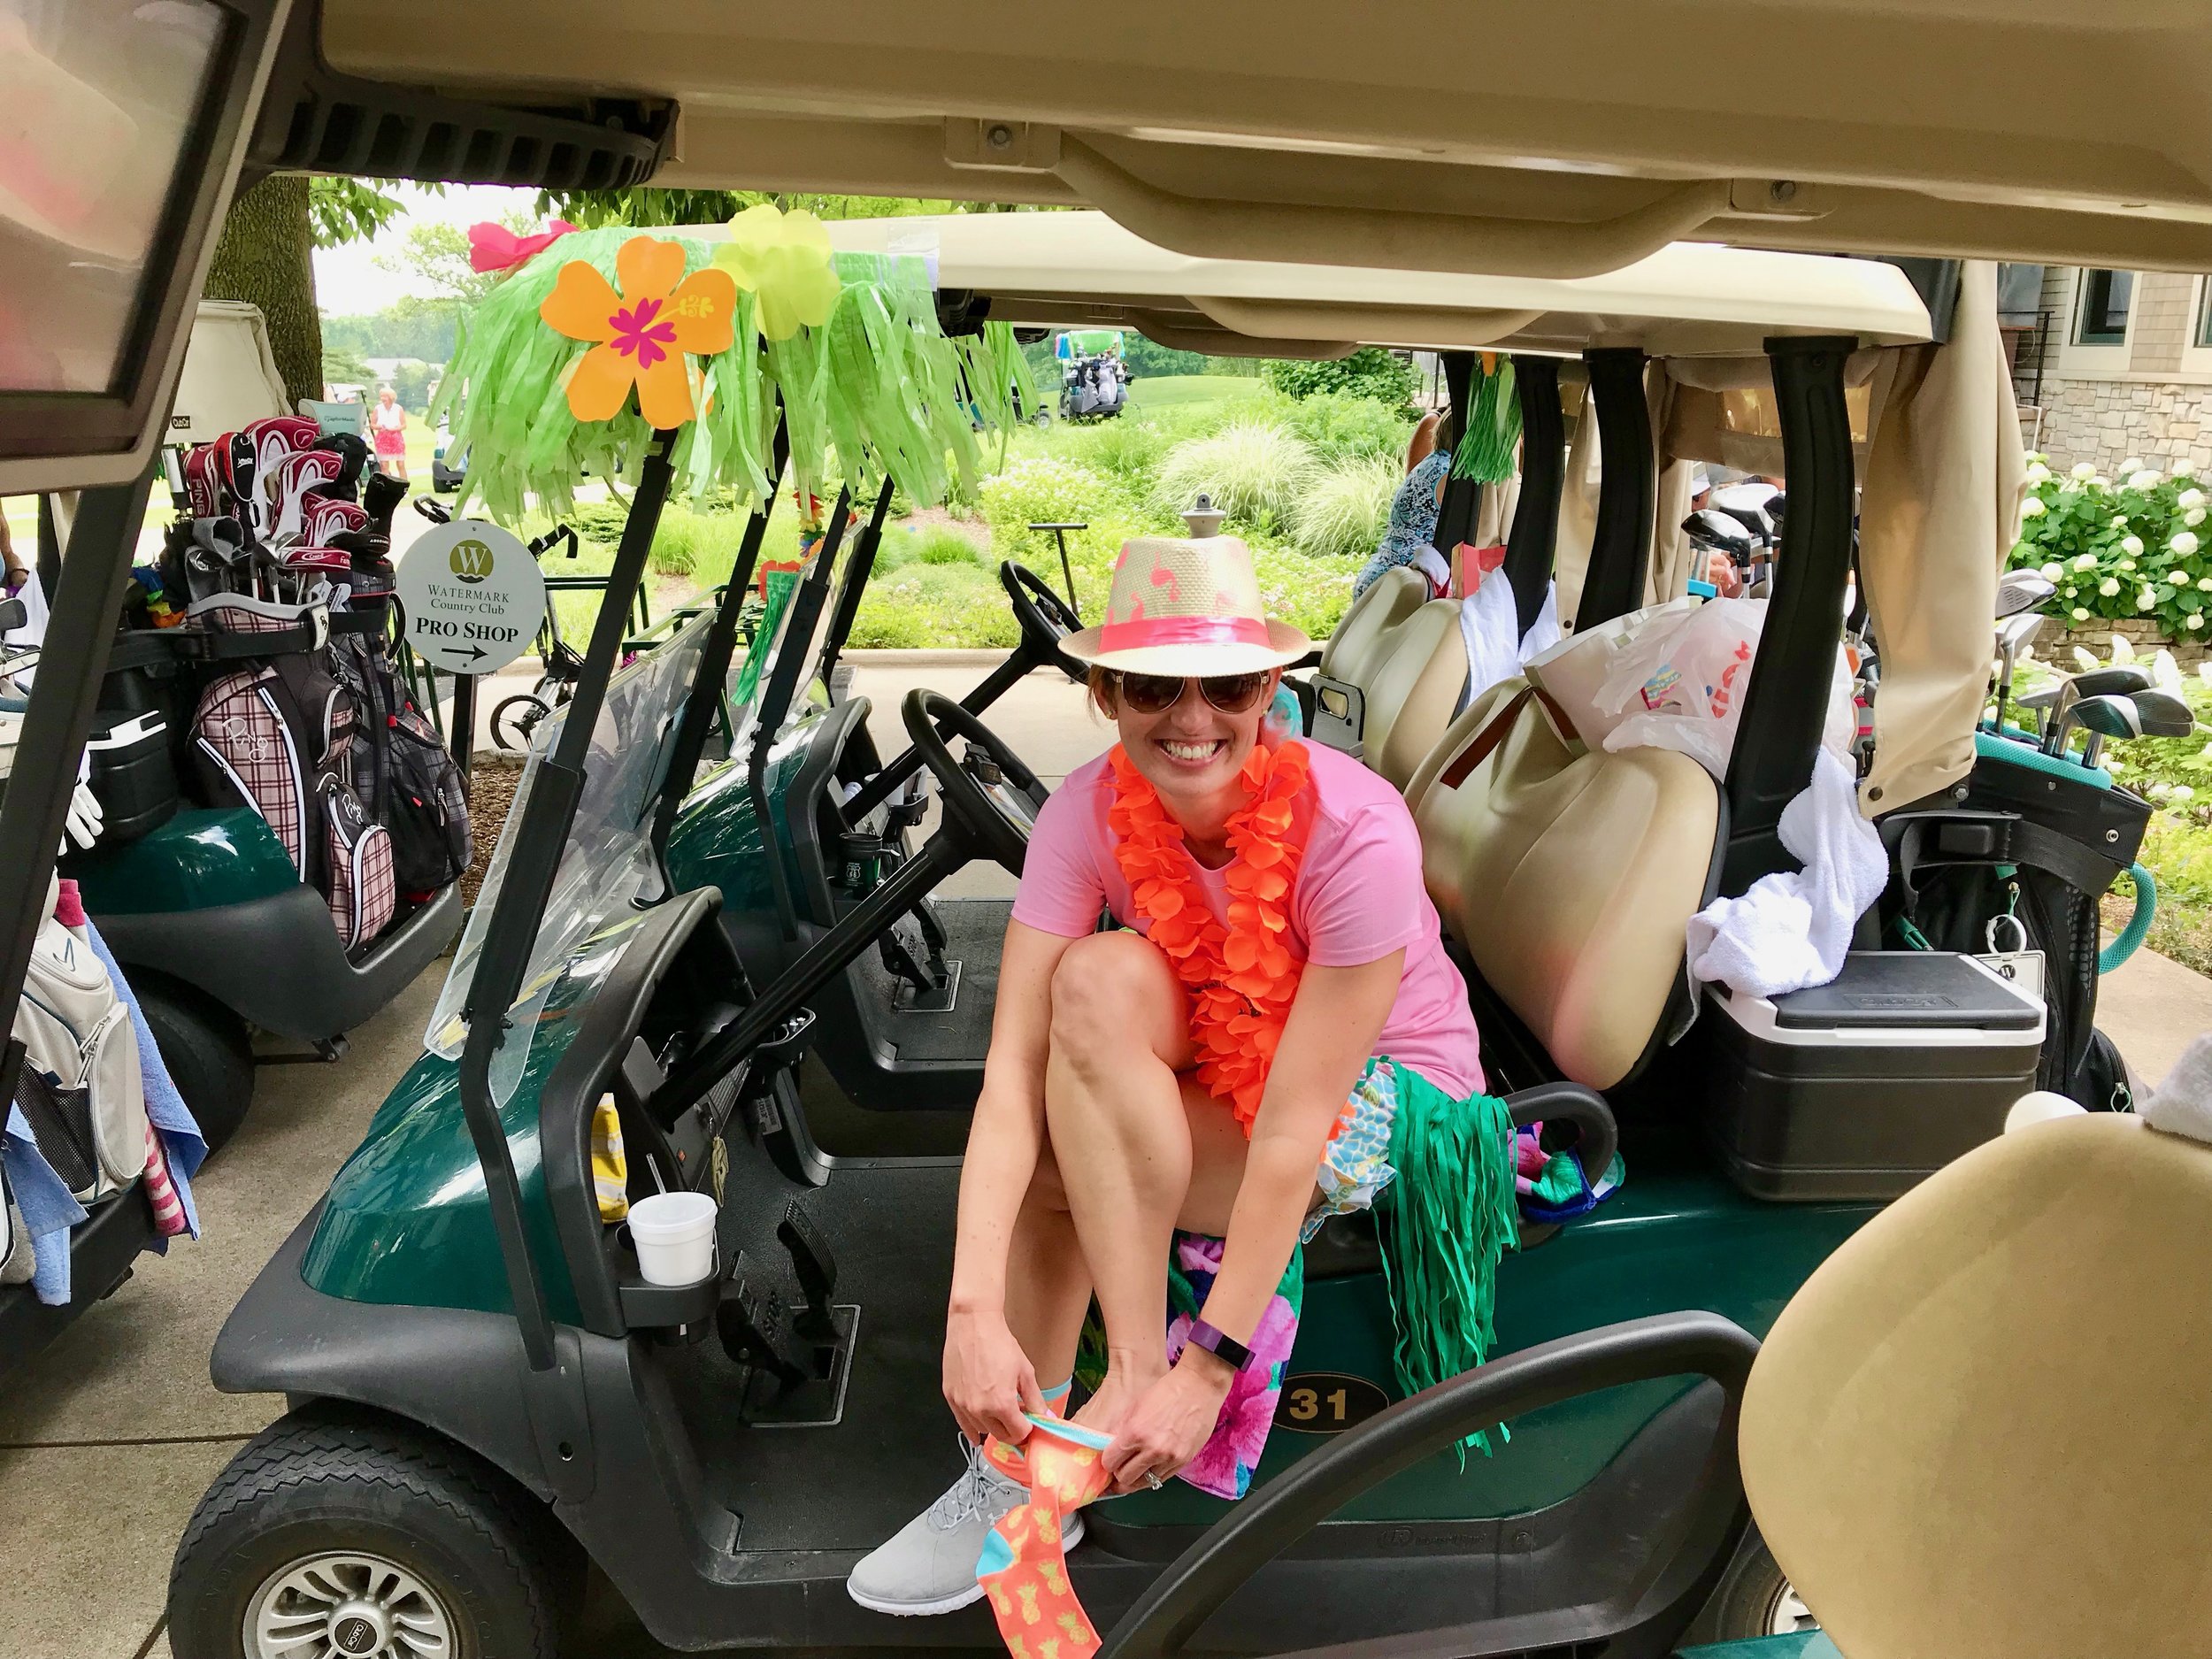 aloha golf outing outfits.jpeg